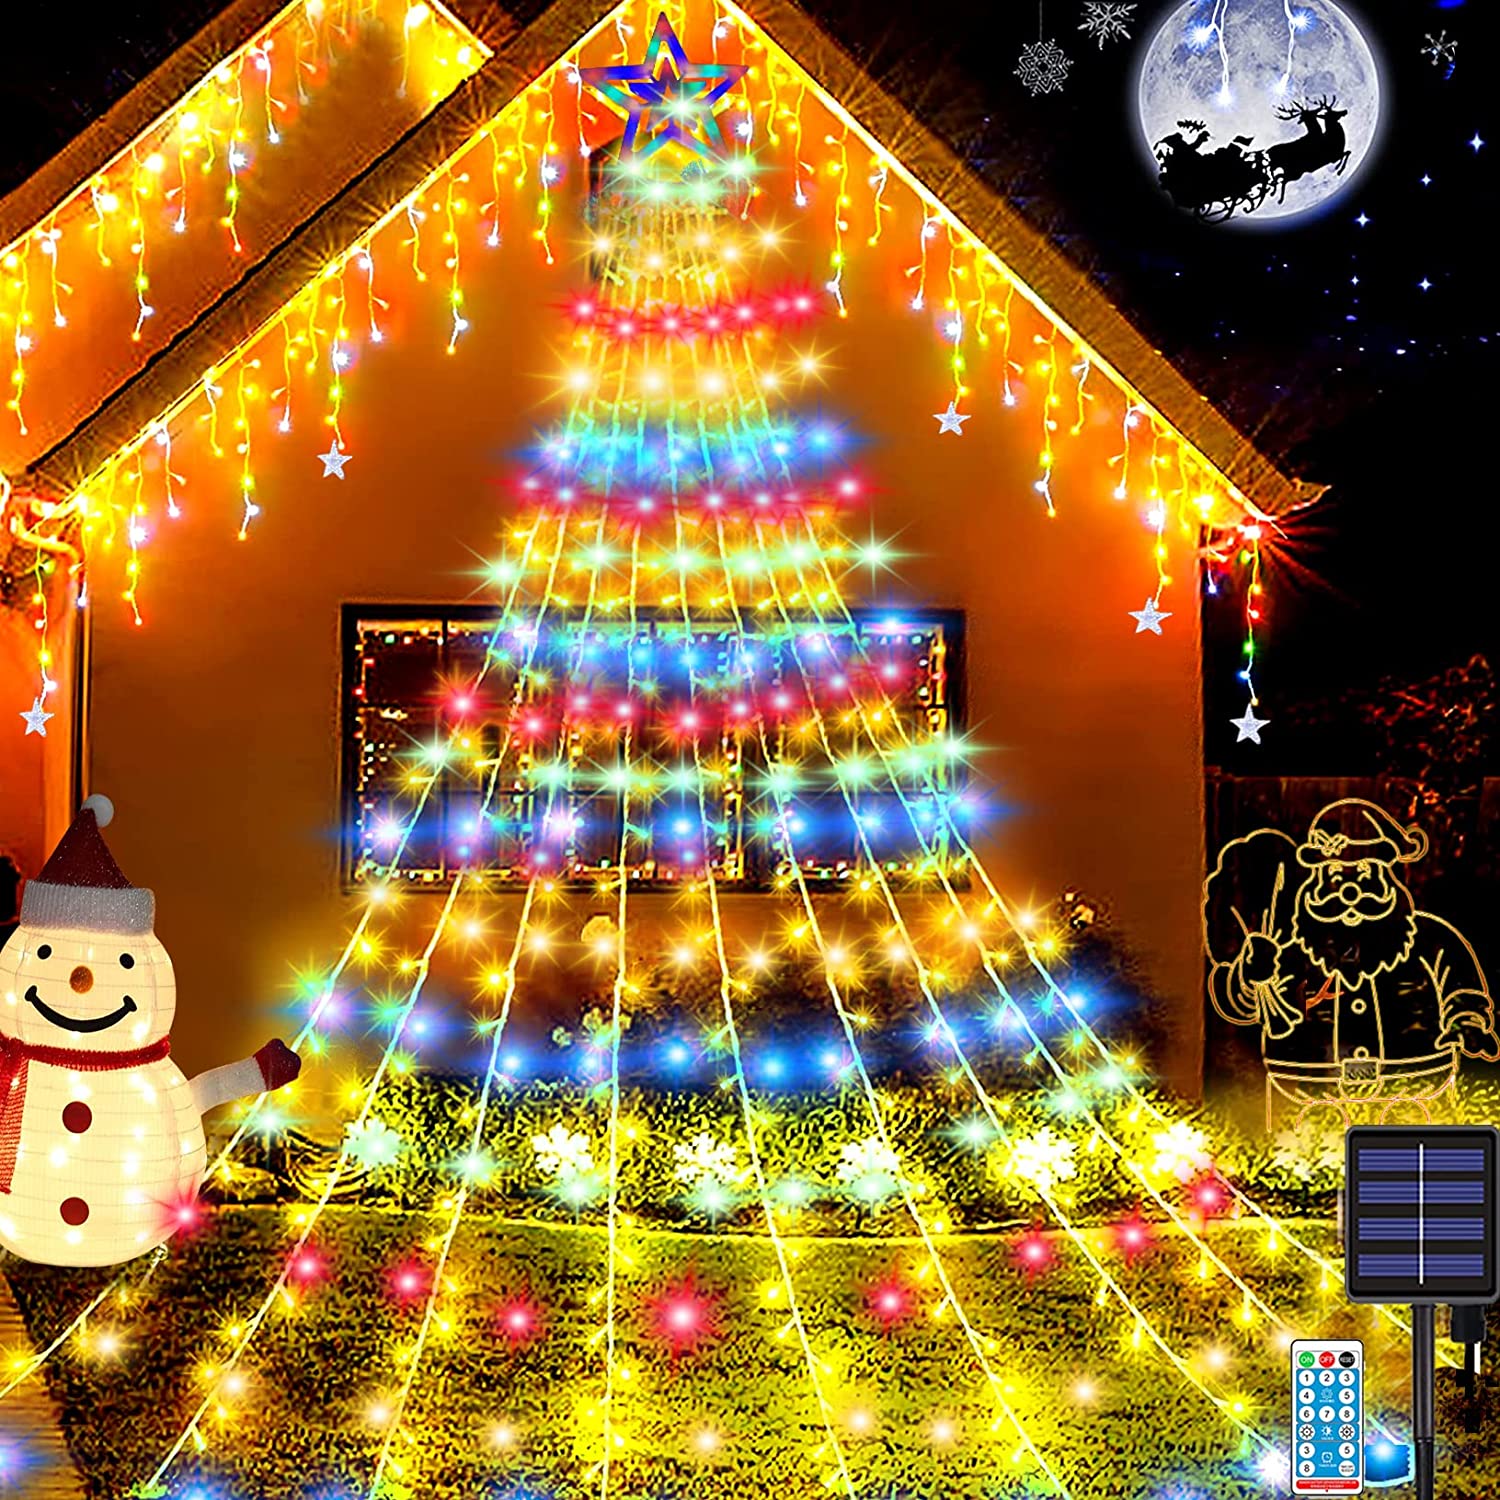 クリスマス LED ソーラー イルミネーションライト クリスマス飾りライト ストリングライト ドレープライト クリスマス ツリー 飾り 装飾ライト電飾 350球 8種点灯モード 9本*3.5M リモコン付 …